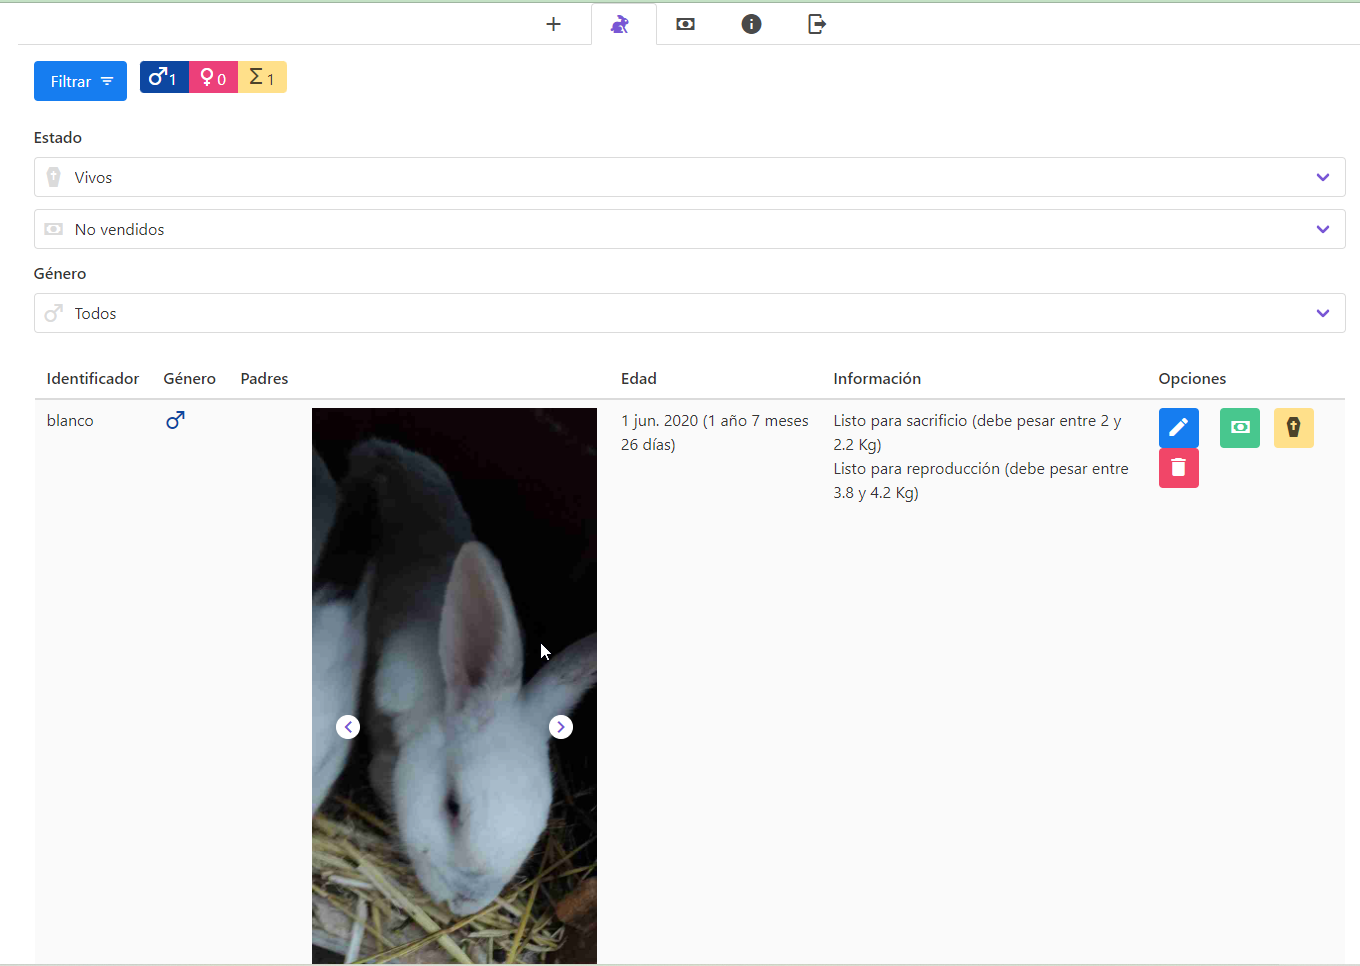 Listado de conejos - Mostrar fotos, información y filtrar